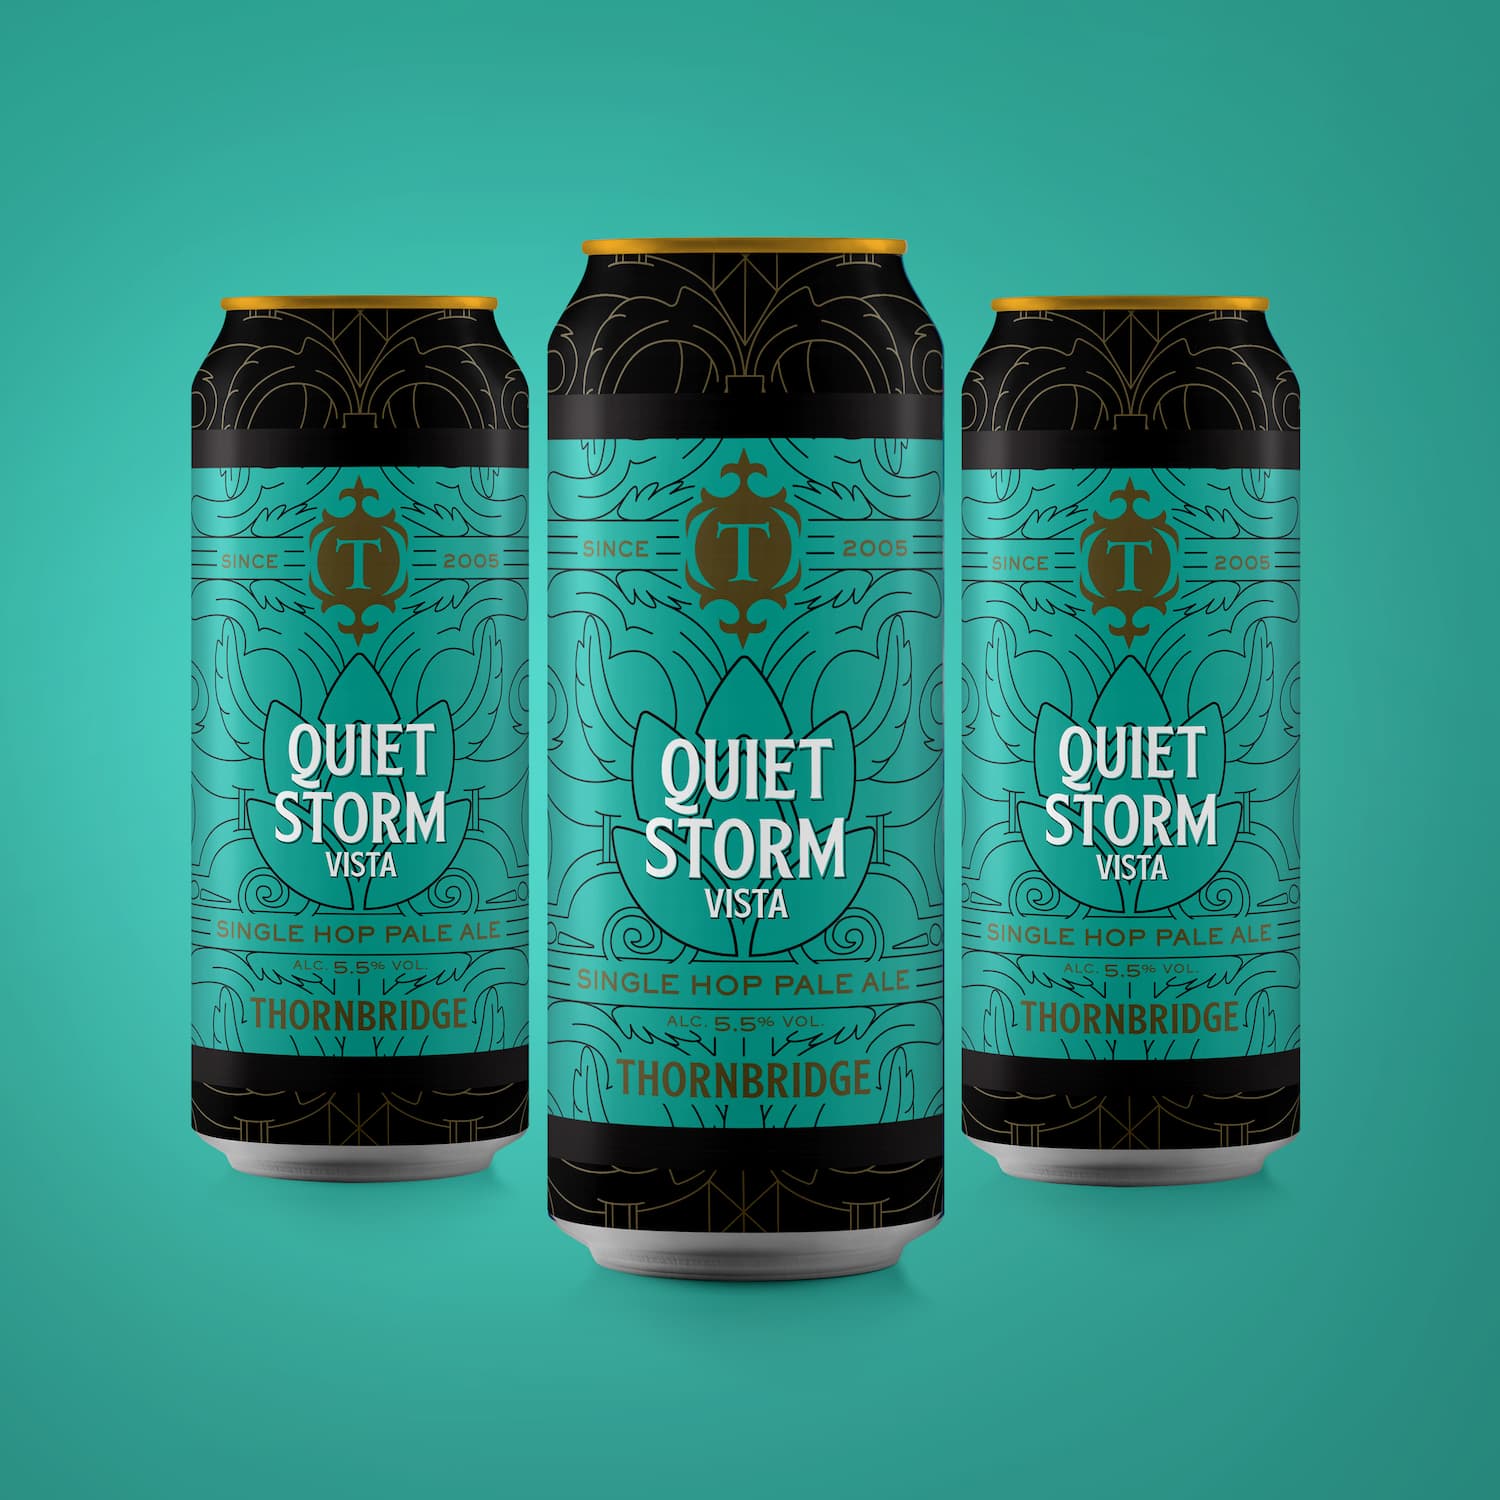 Quiet Storm Vista, 5.5% Single Hopped Pale Ale 12 x 440ml cans Beer - Case Cans Thornbridge